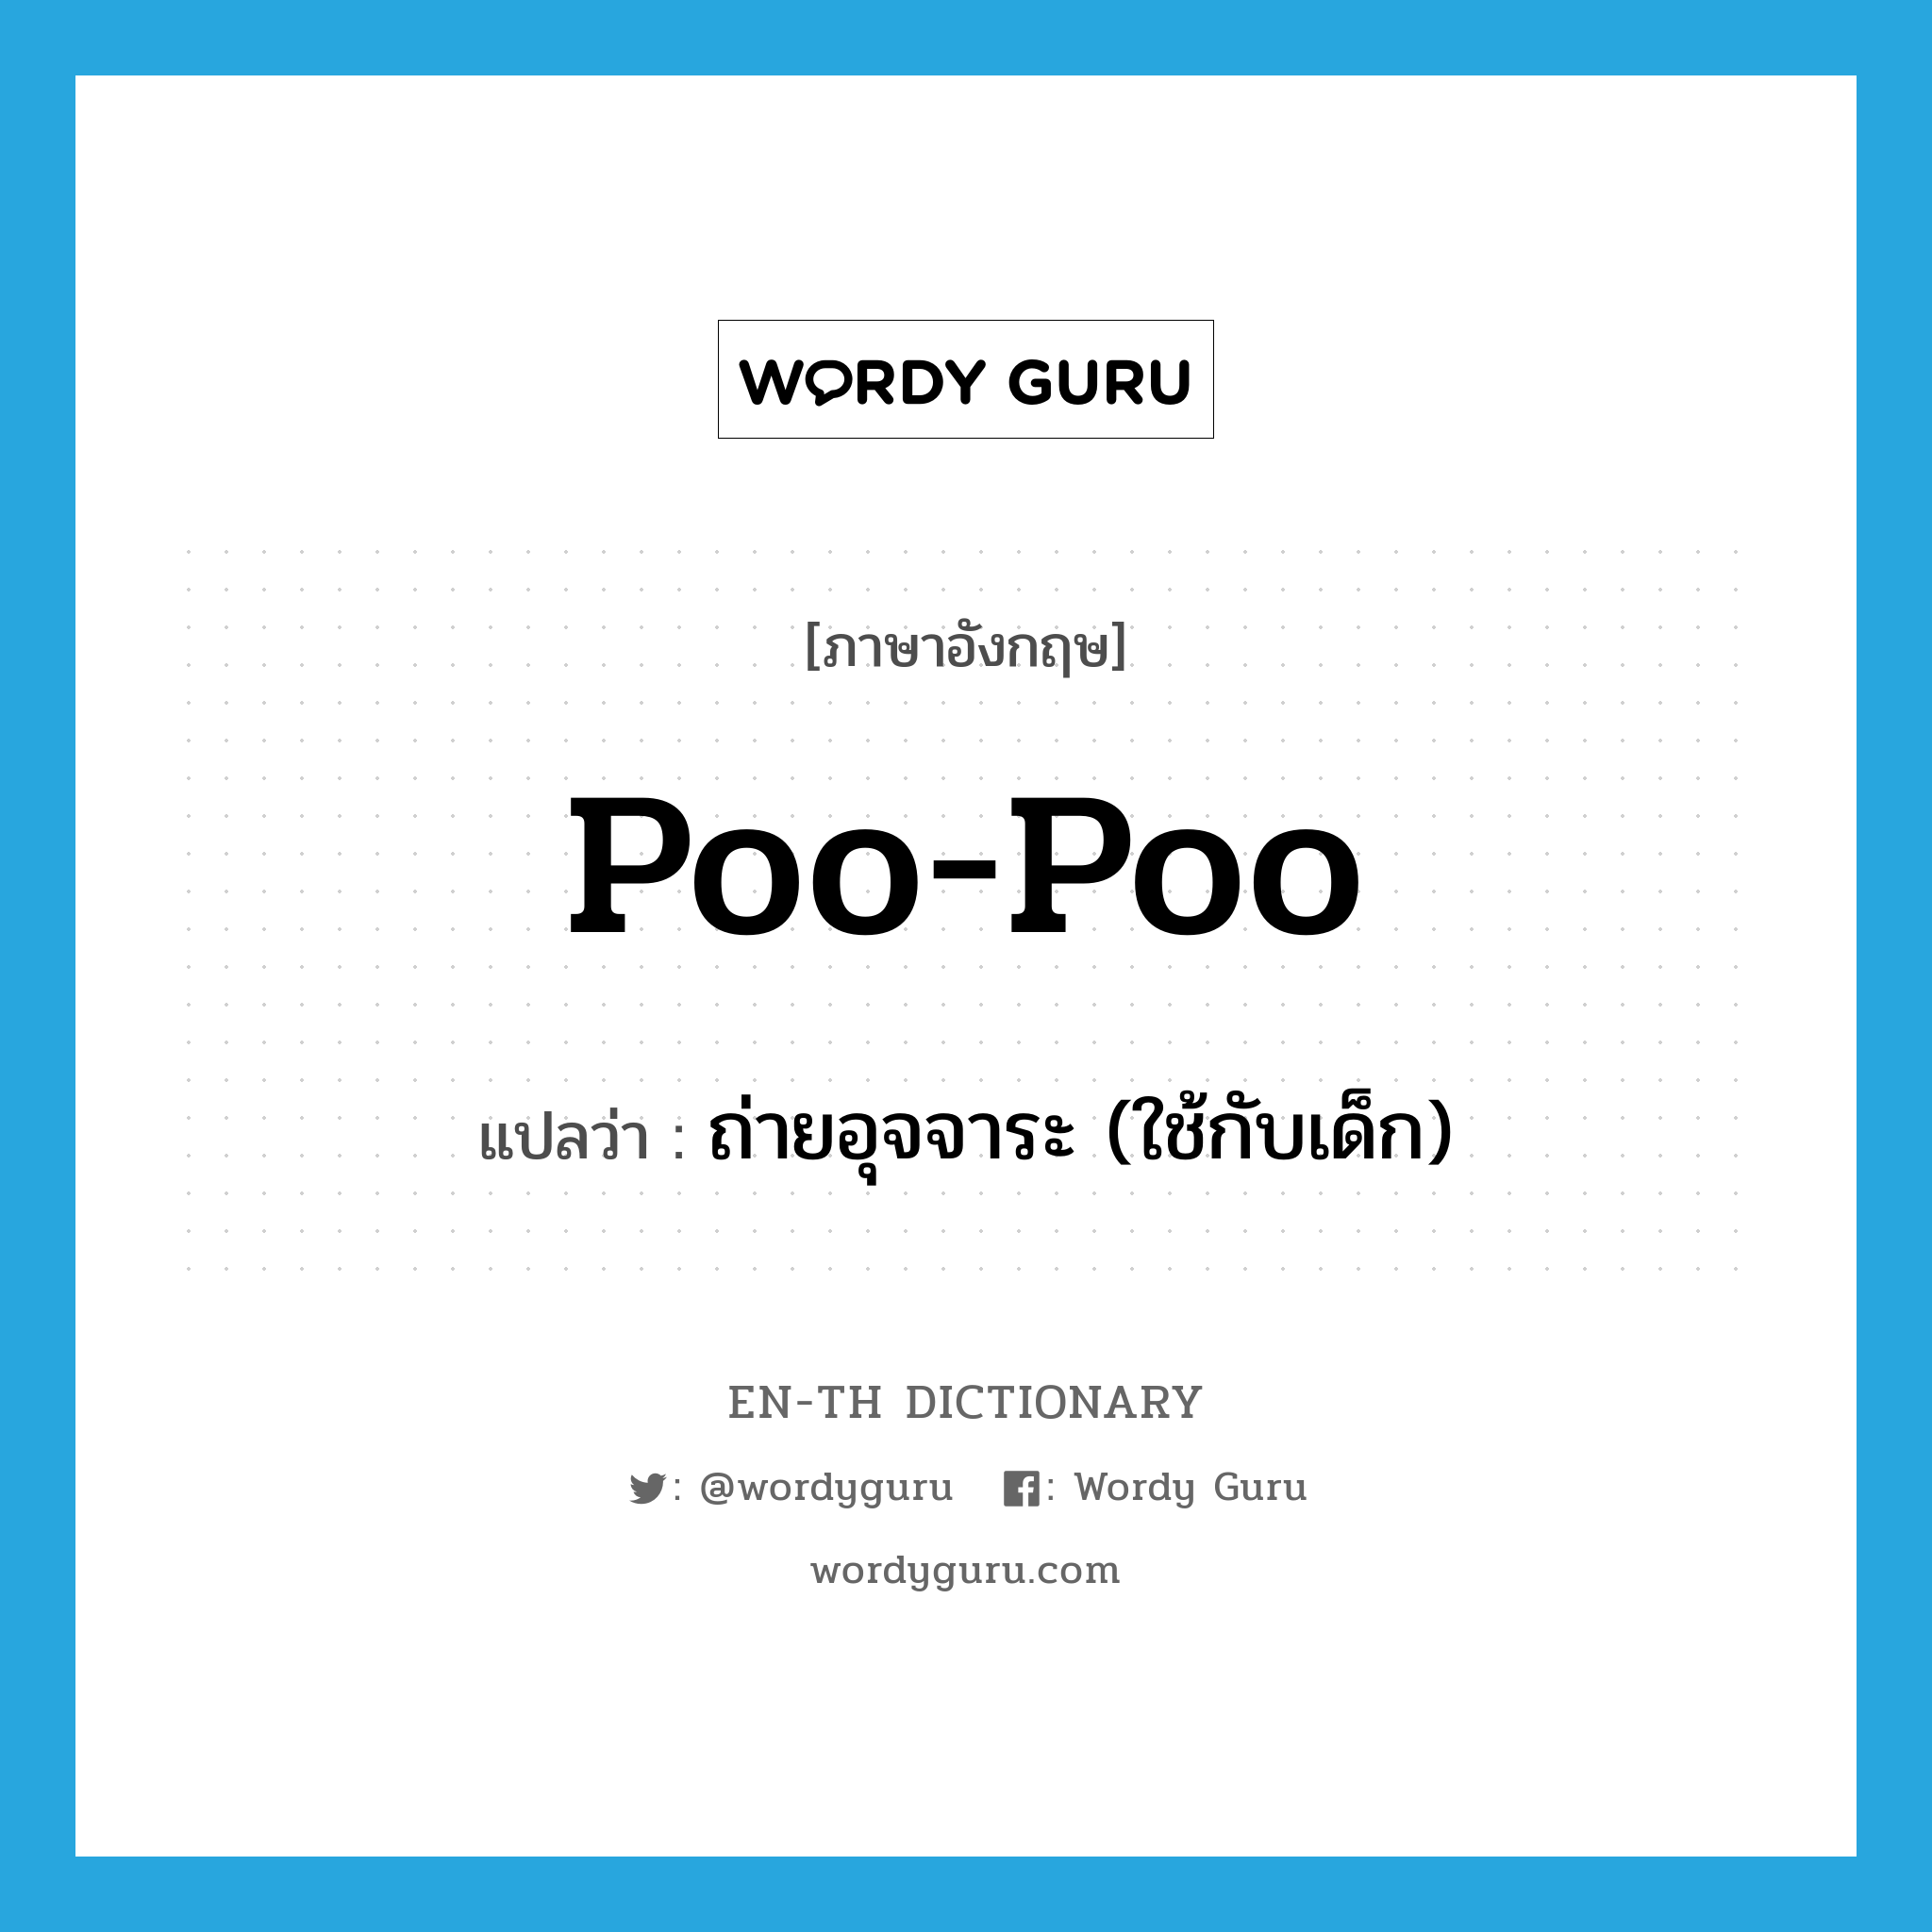 ถ่ายอุจจาระ (ใช้กับเด็ก) ภาษาอังกฤษ?, คำศัพท์ภาษาอังกฤษ ถ่ายอุจจาระ (ใช้กับเด็ก) แปลว่า poo-poo ประเภท VI หมวด VI